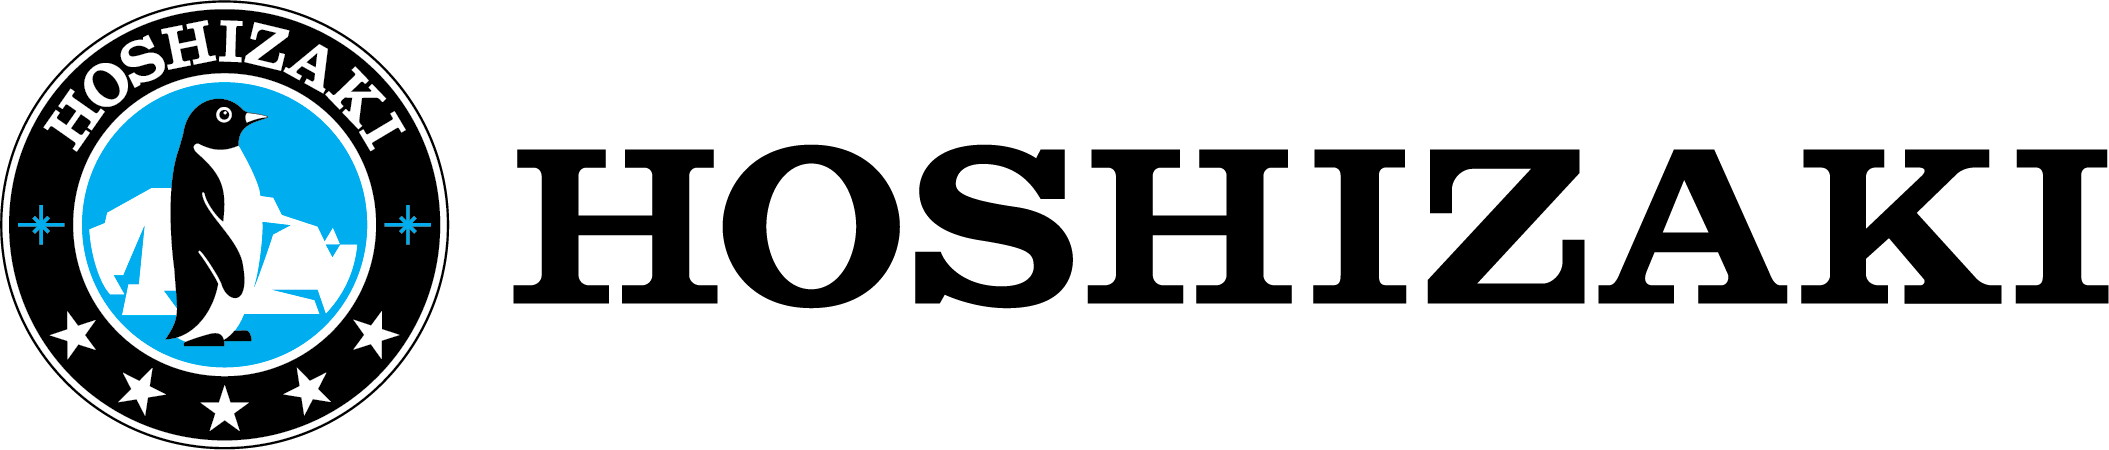 Image of Hoshizaki logo